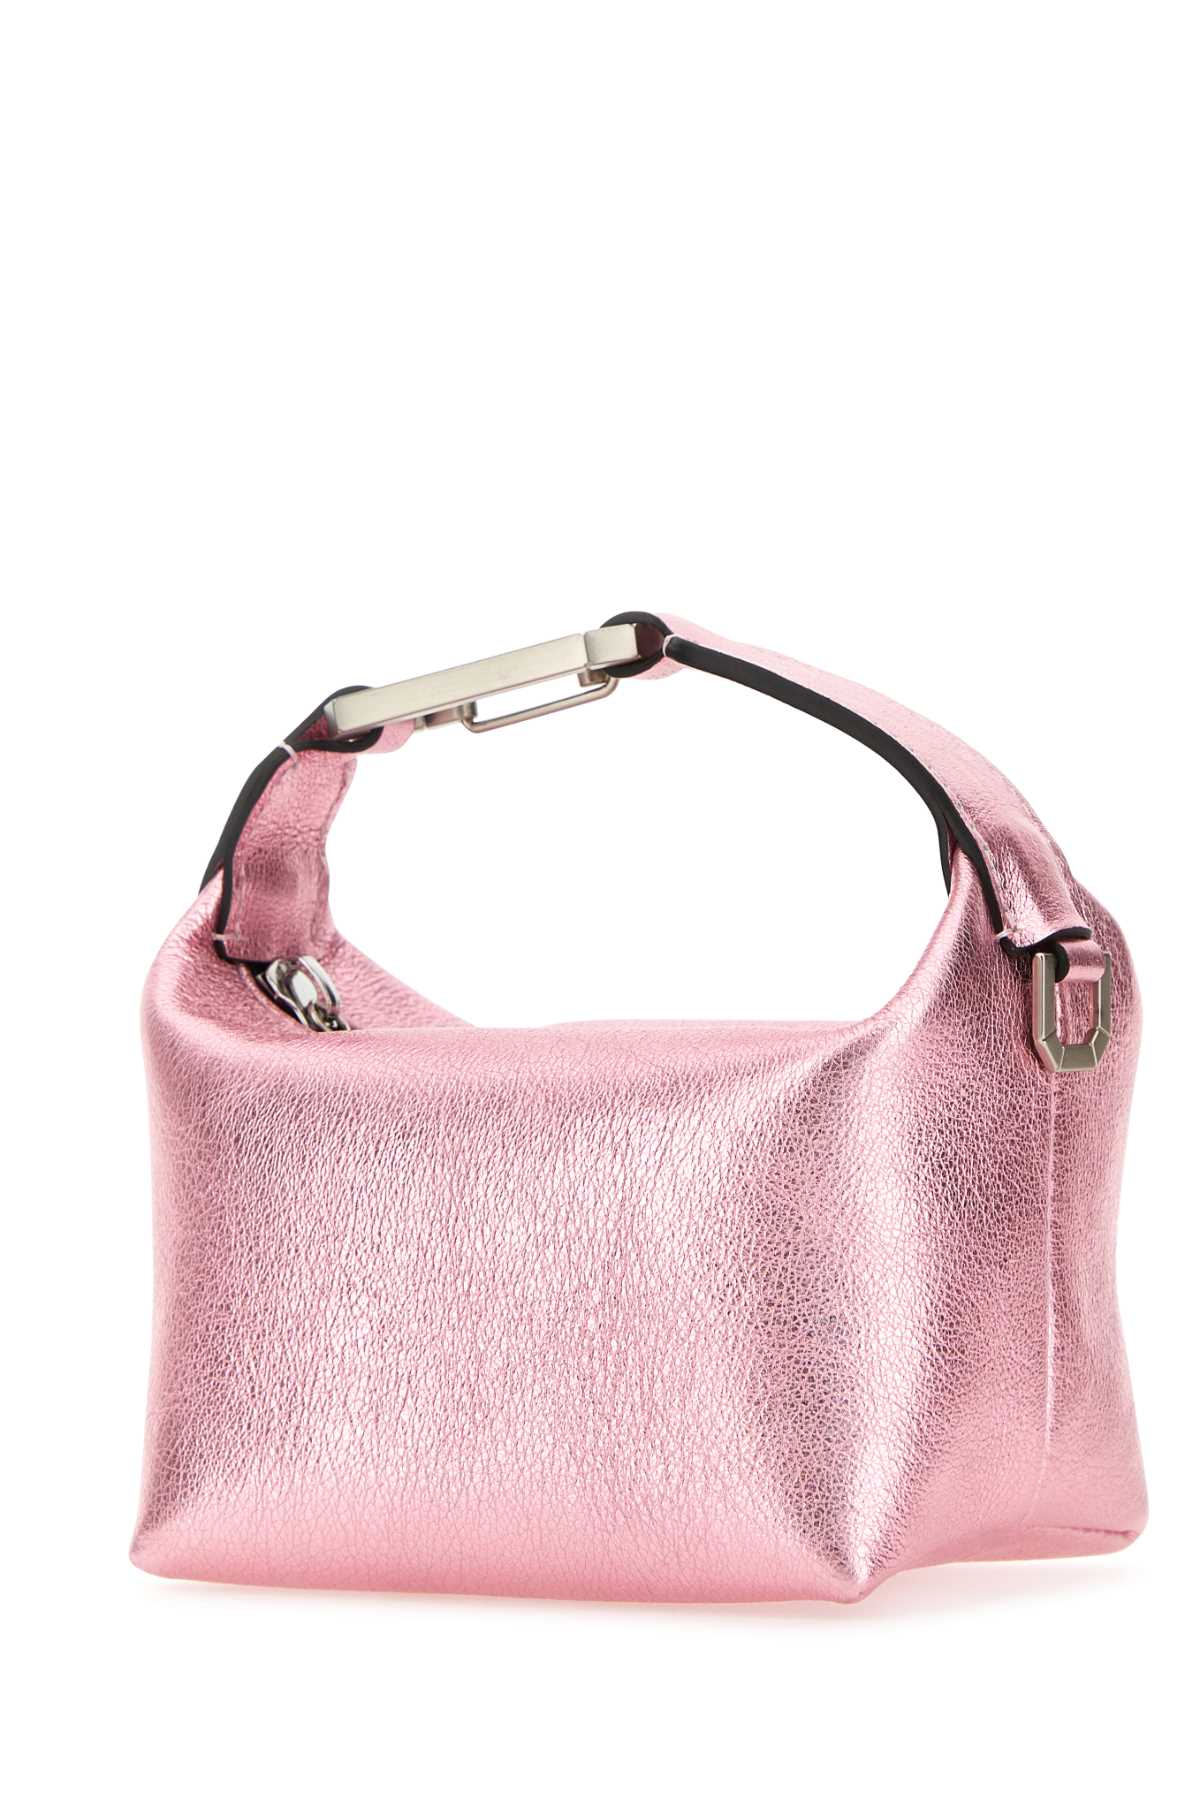 Eéra Pink Leather Moonbag Handbag In Palepink